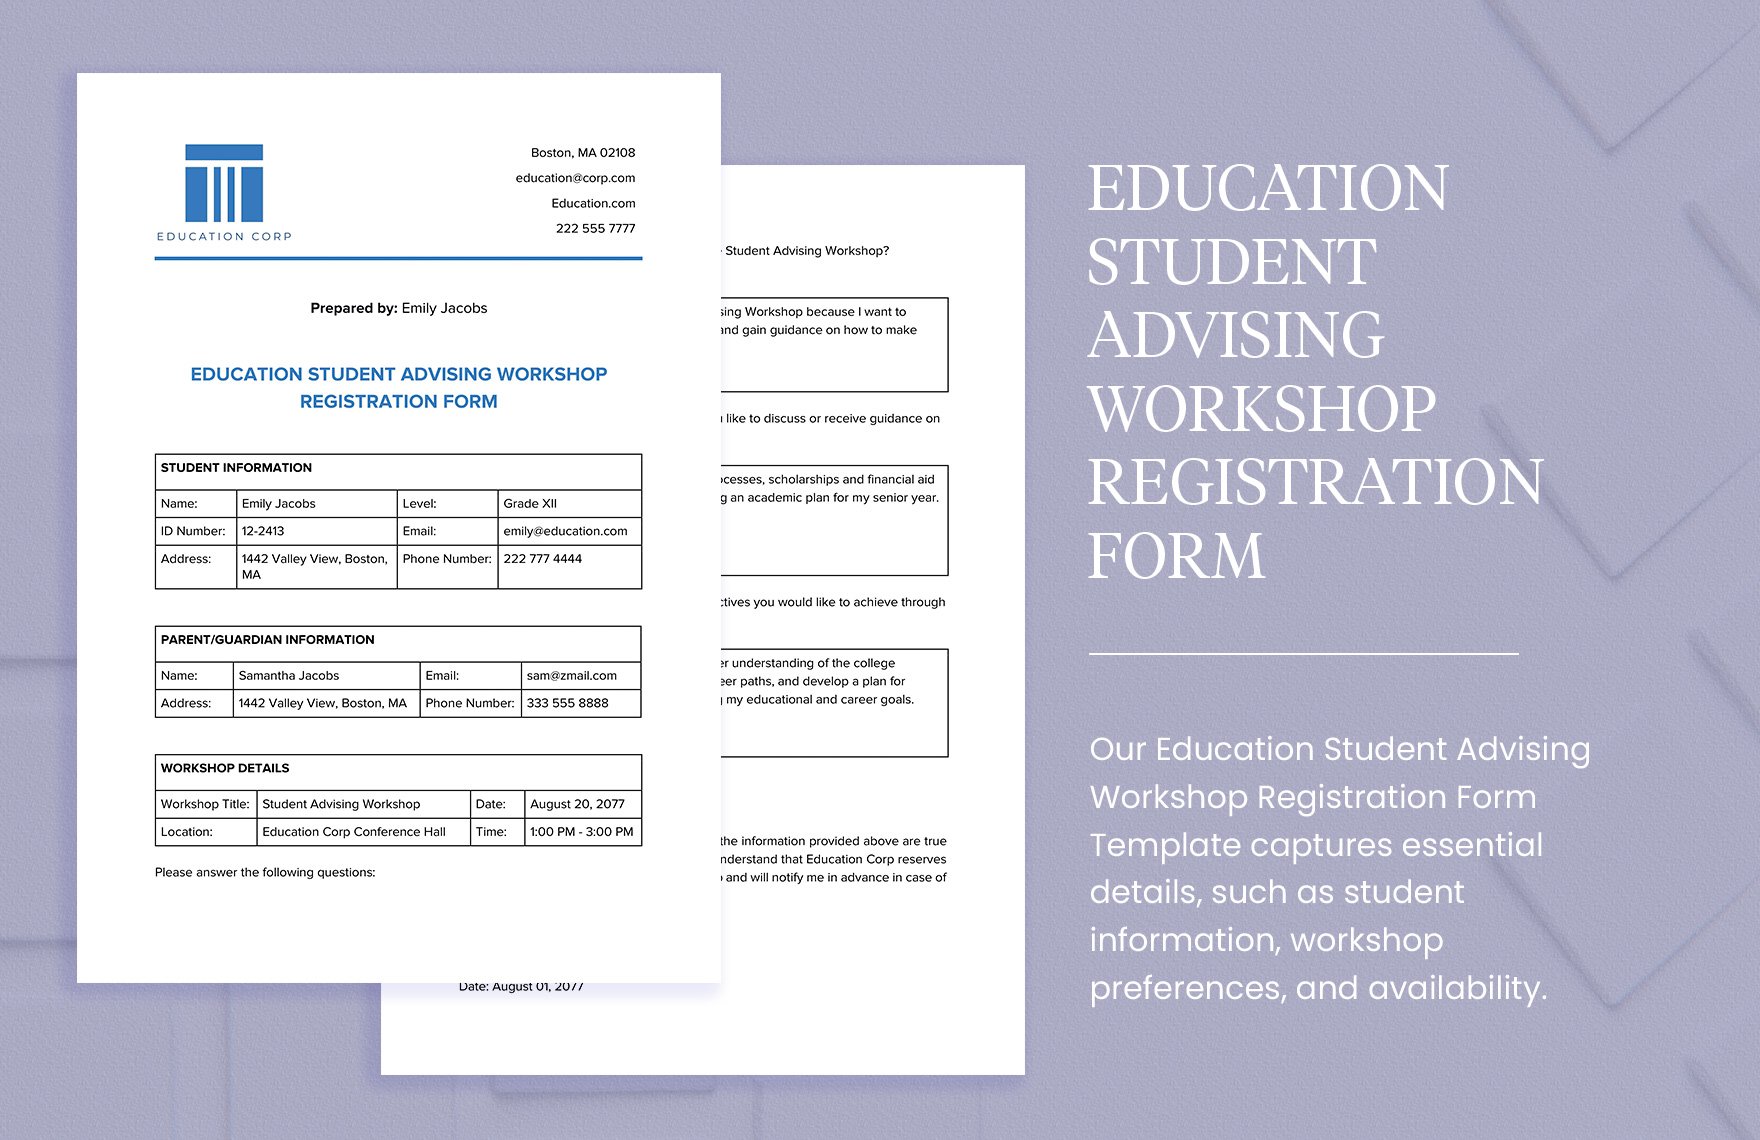 Education Student Advising Workshop Registration Form